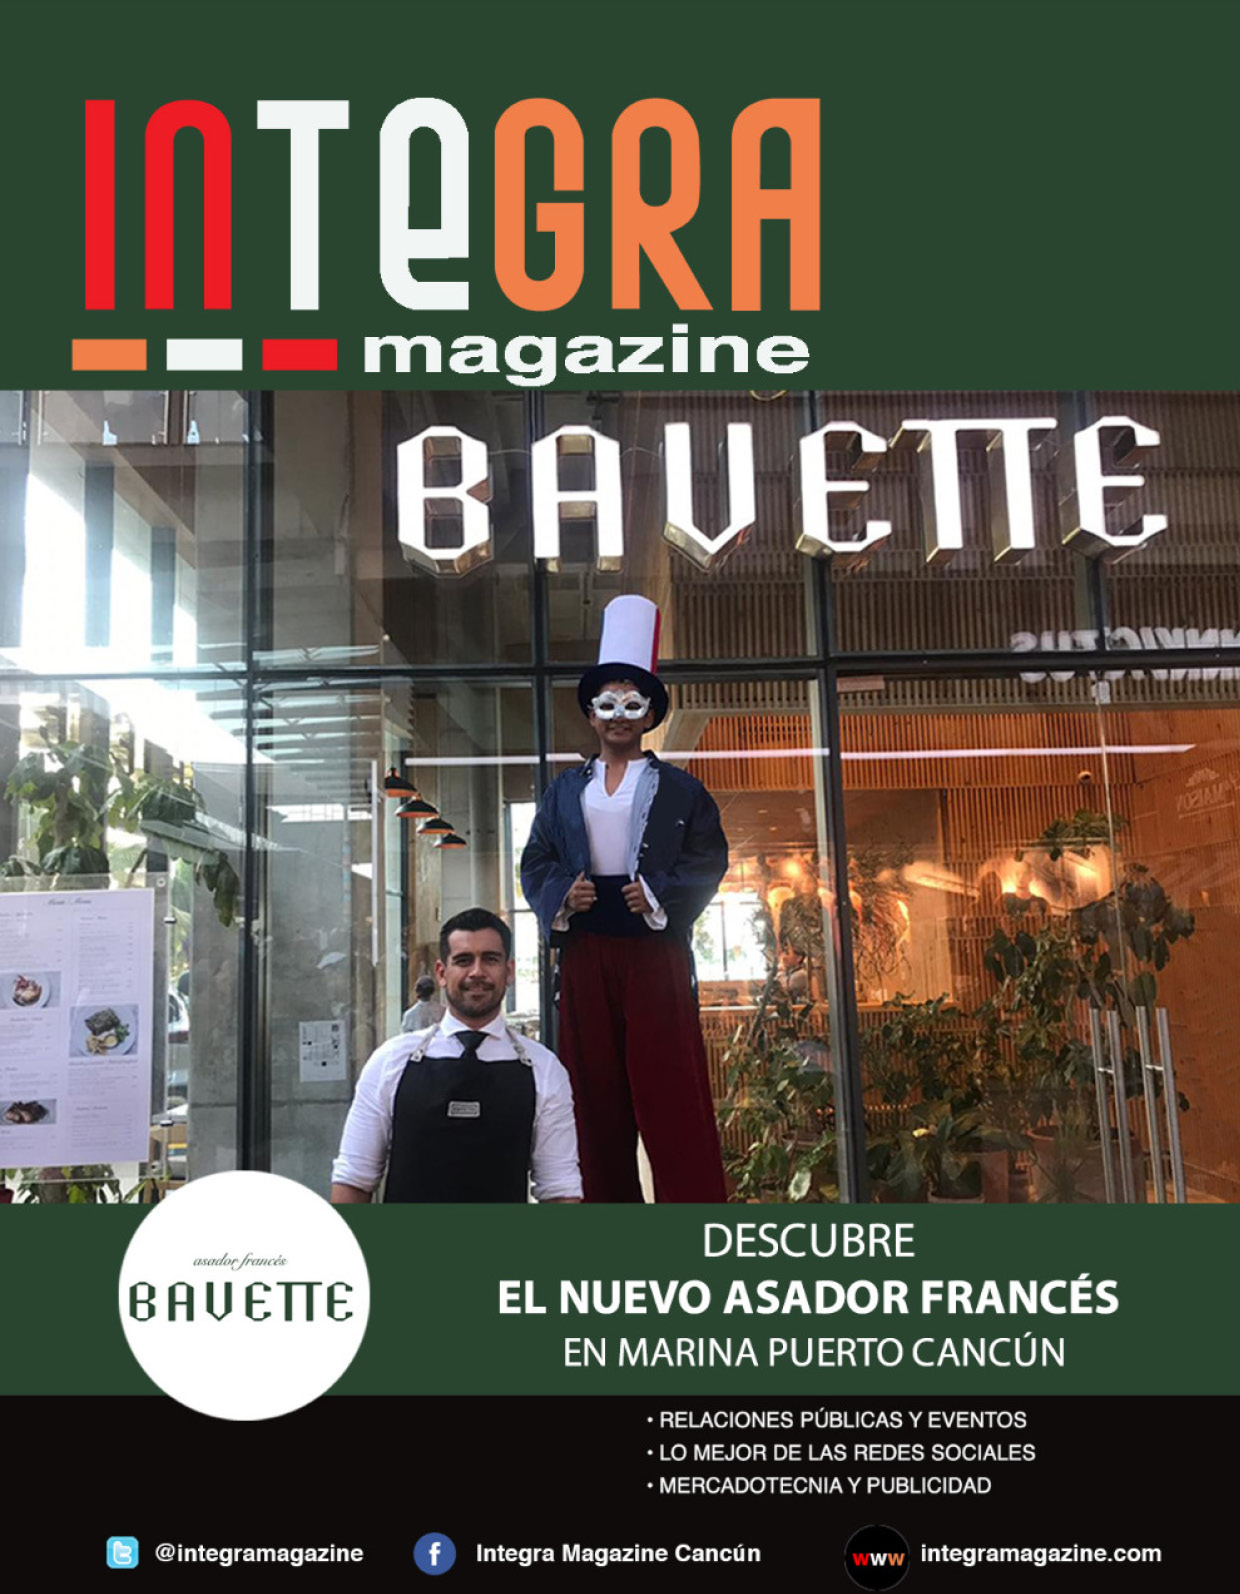 Bavette – Descubre el nuevo asador francés en Marina Puerto Cancún